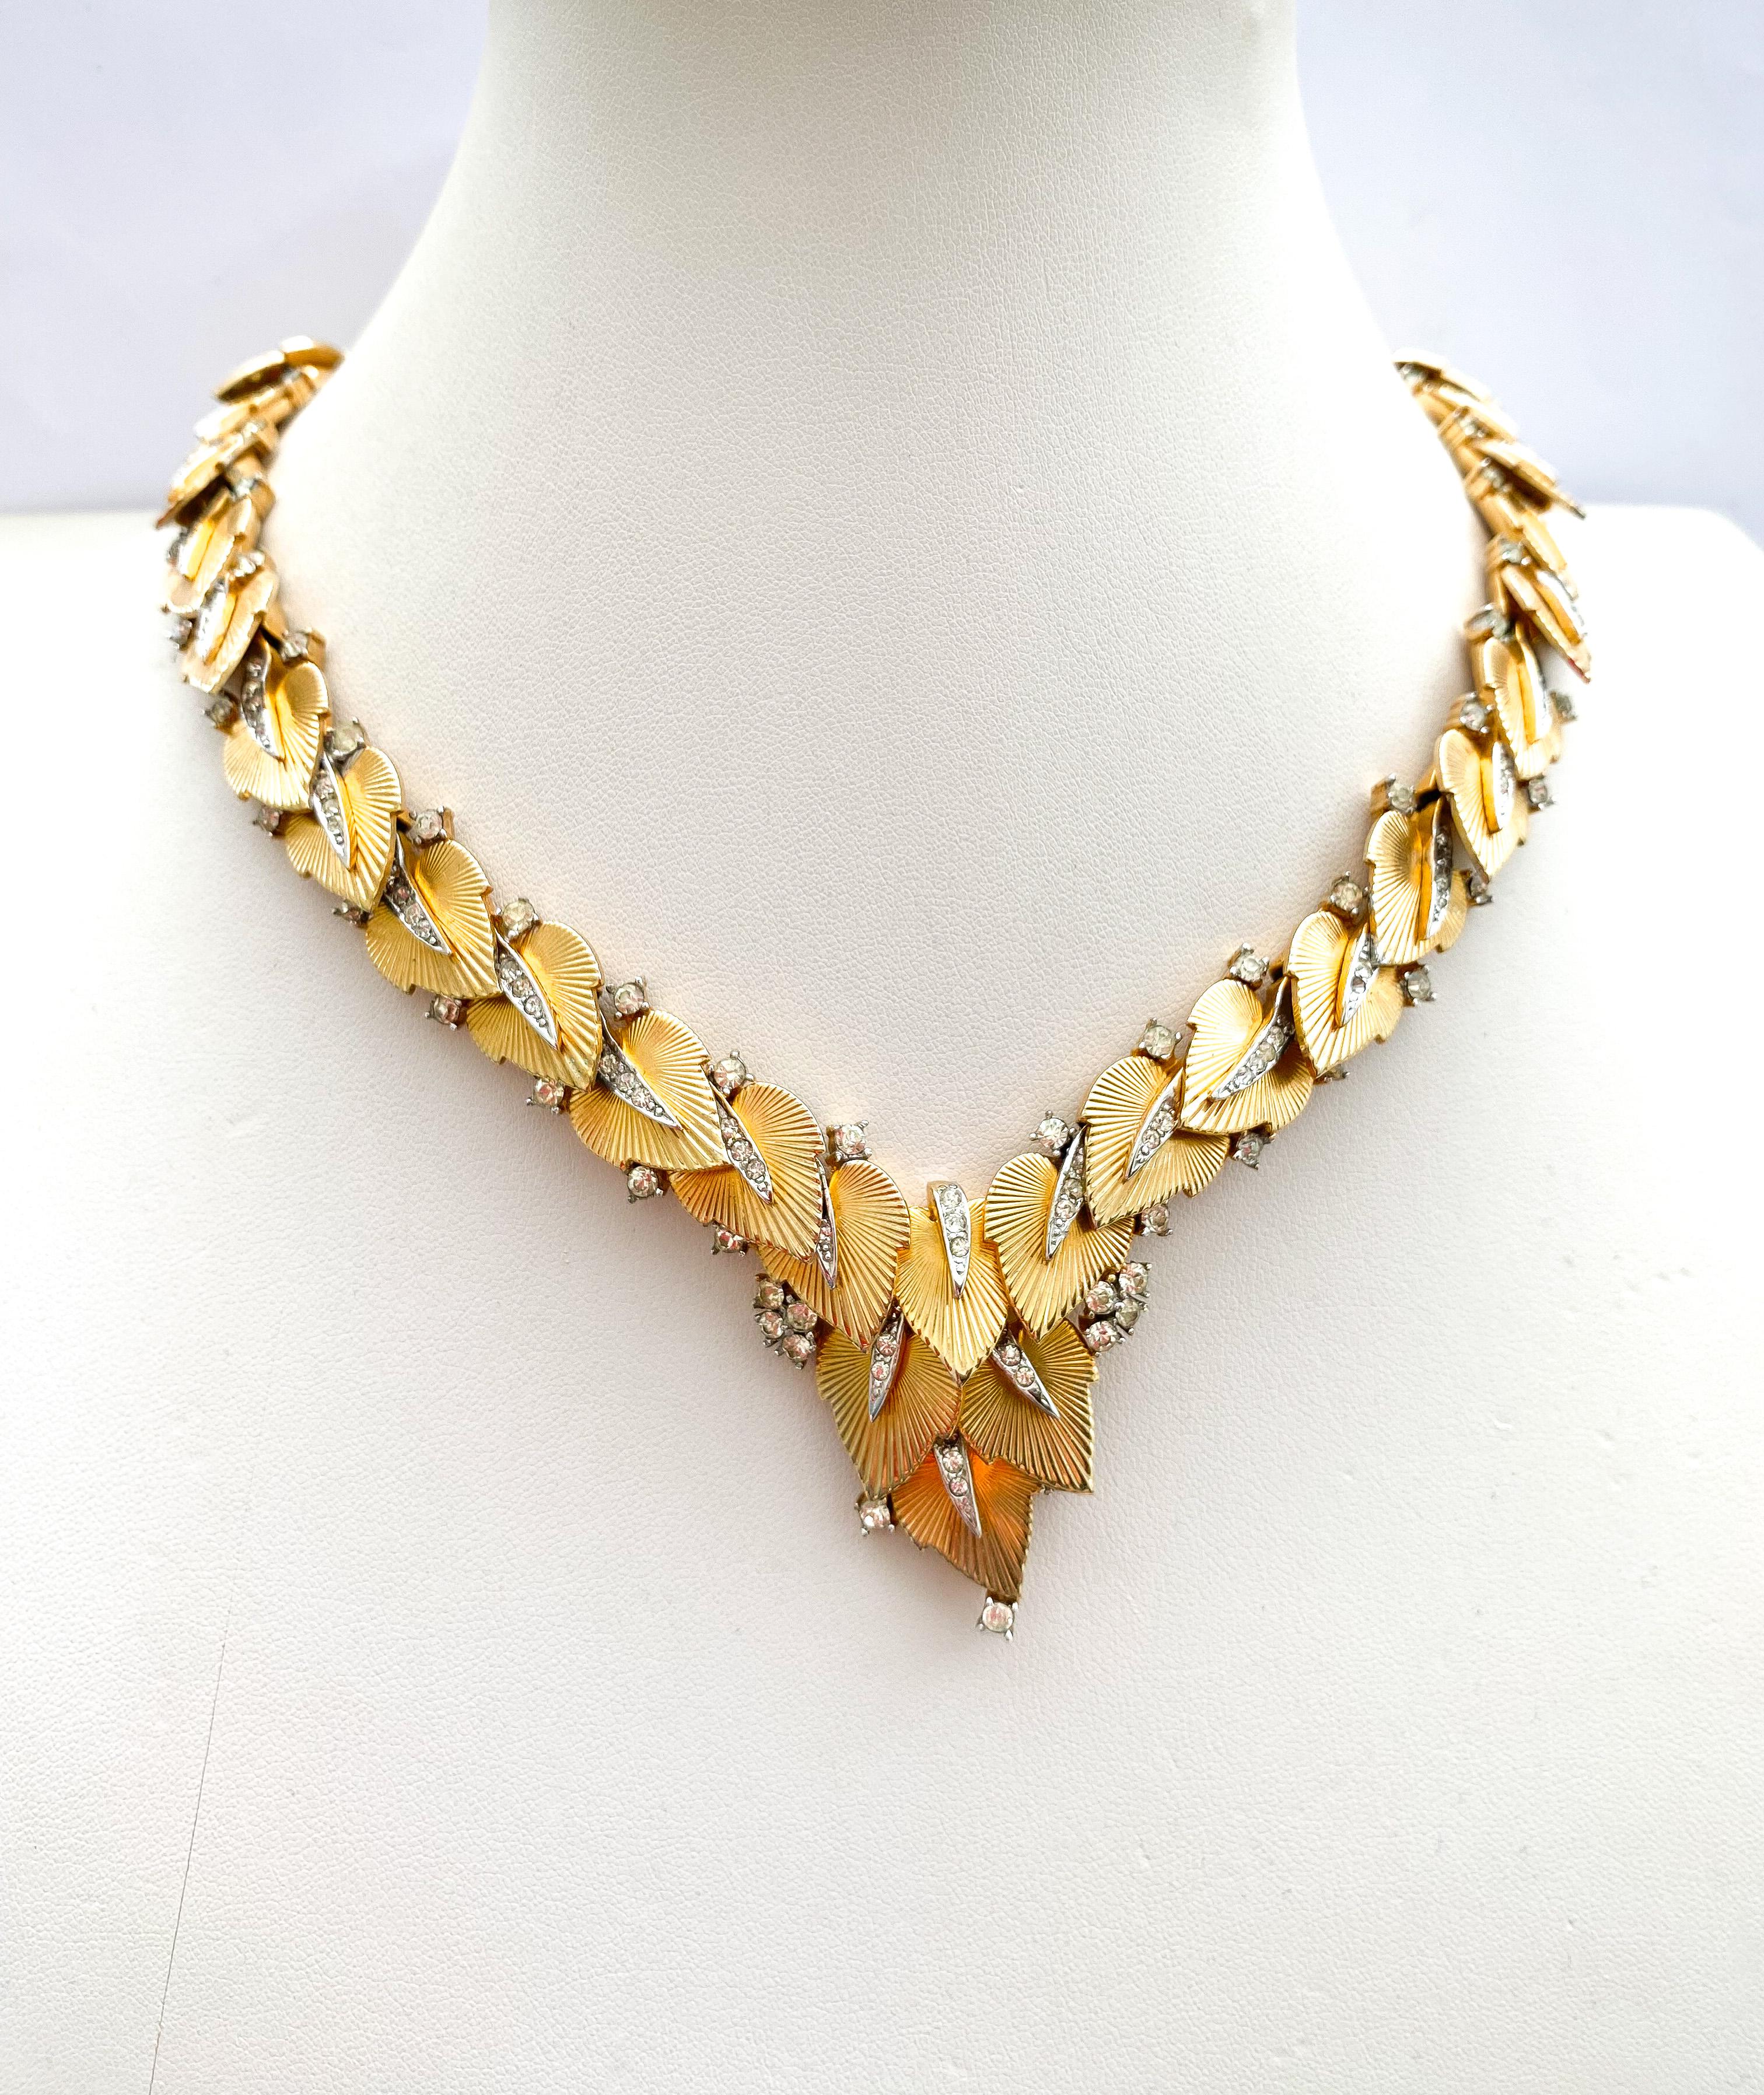 Eine exquisit gestaltete und fein gearbeitete Halskette aus vergoldetem Metall und klarer Paste, entworfen von Marcel Boucher in den 1960er Jahren. Klassisch und elegant, das ist Boucher von seiner besten Seite. Er nutzt sein umfassendes Wissen über